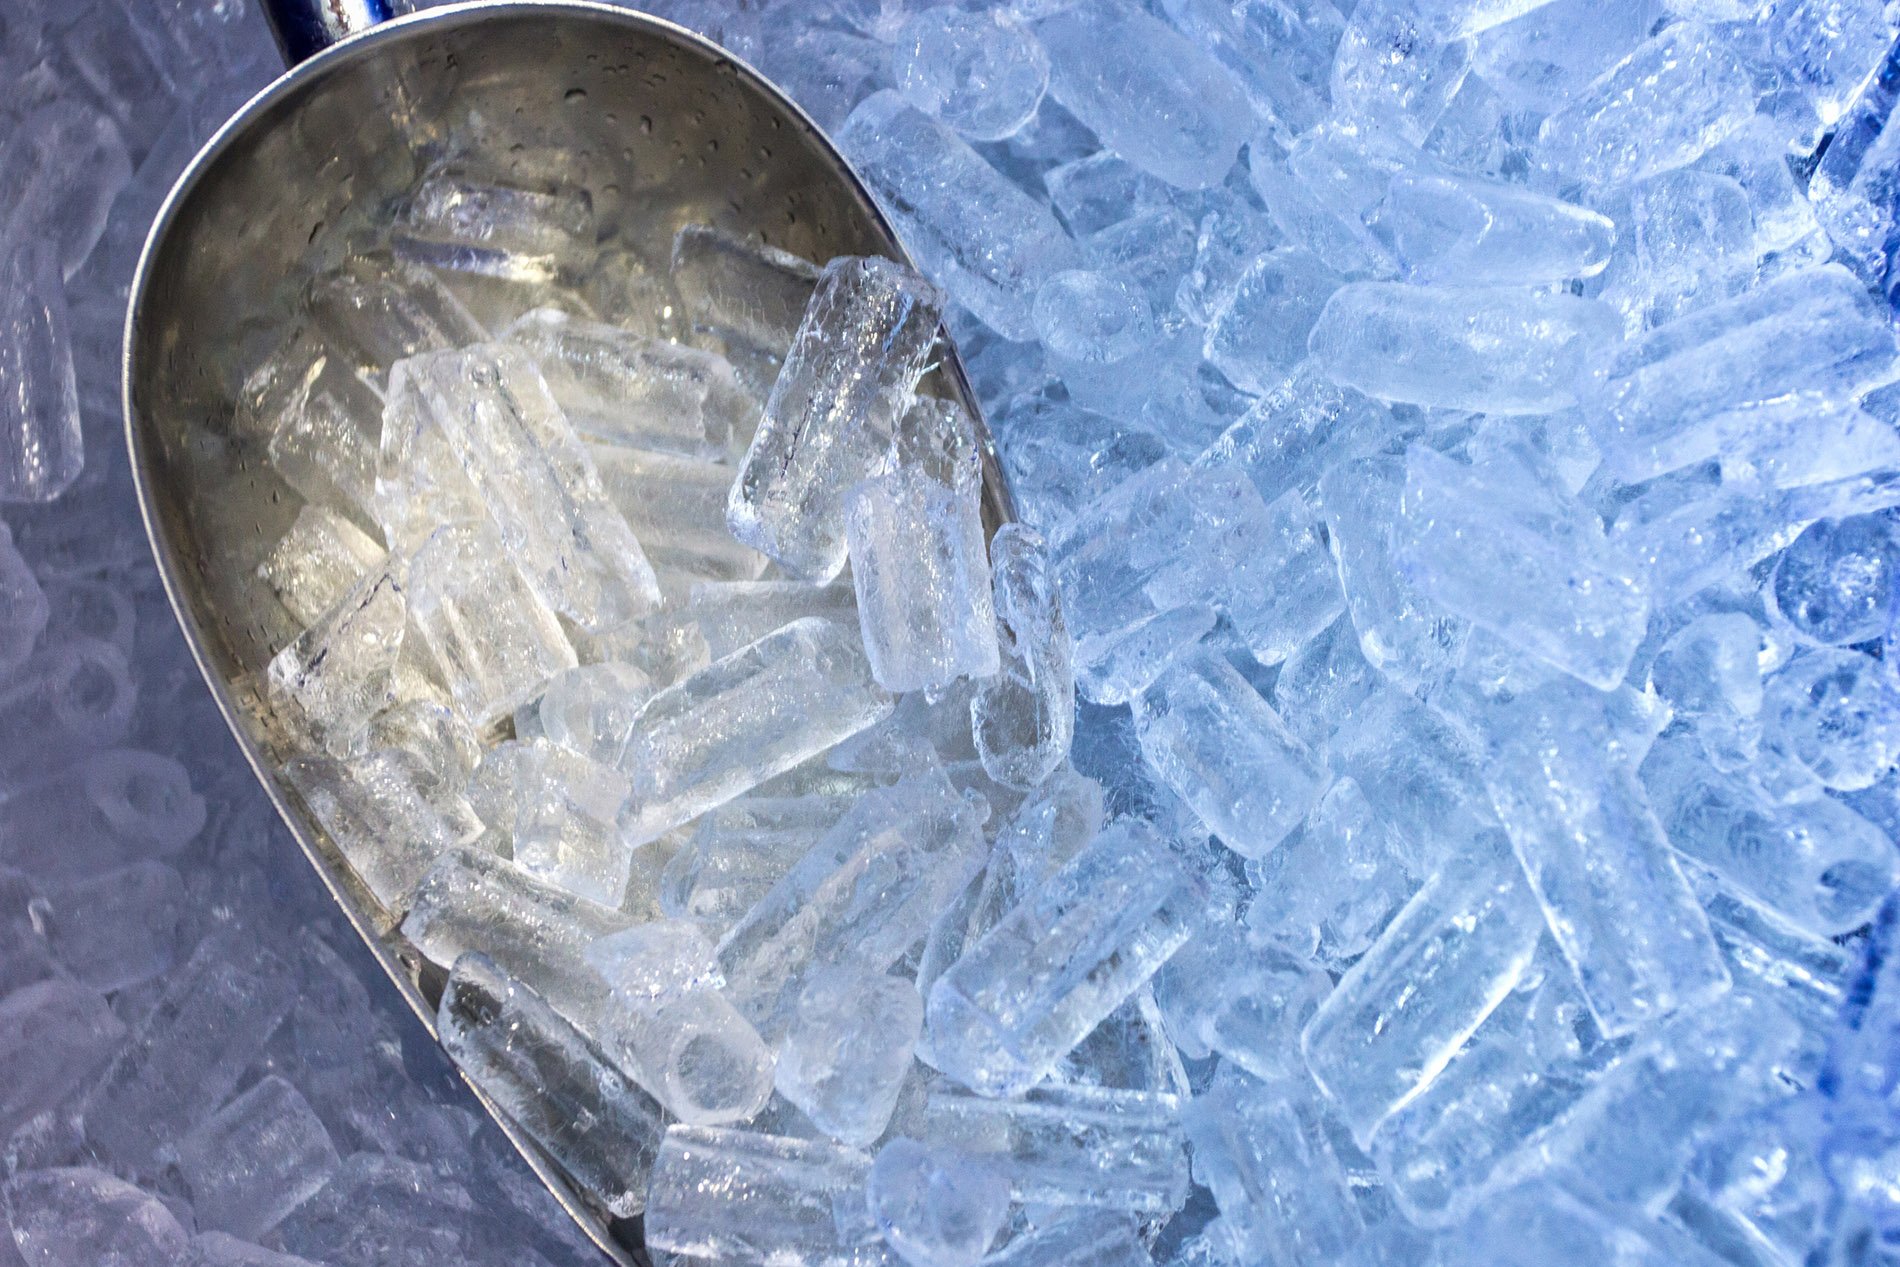 Ice Machine and aluminum scoop